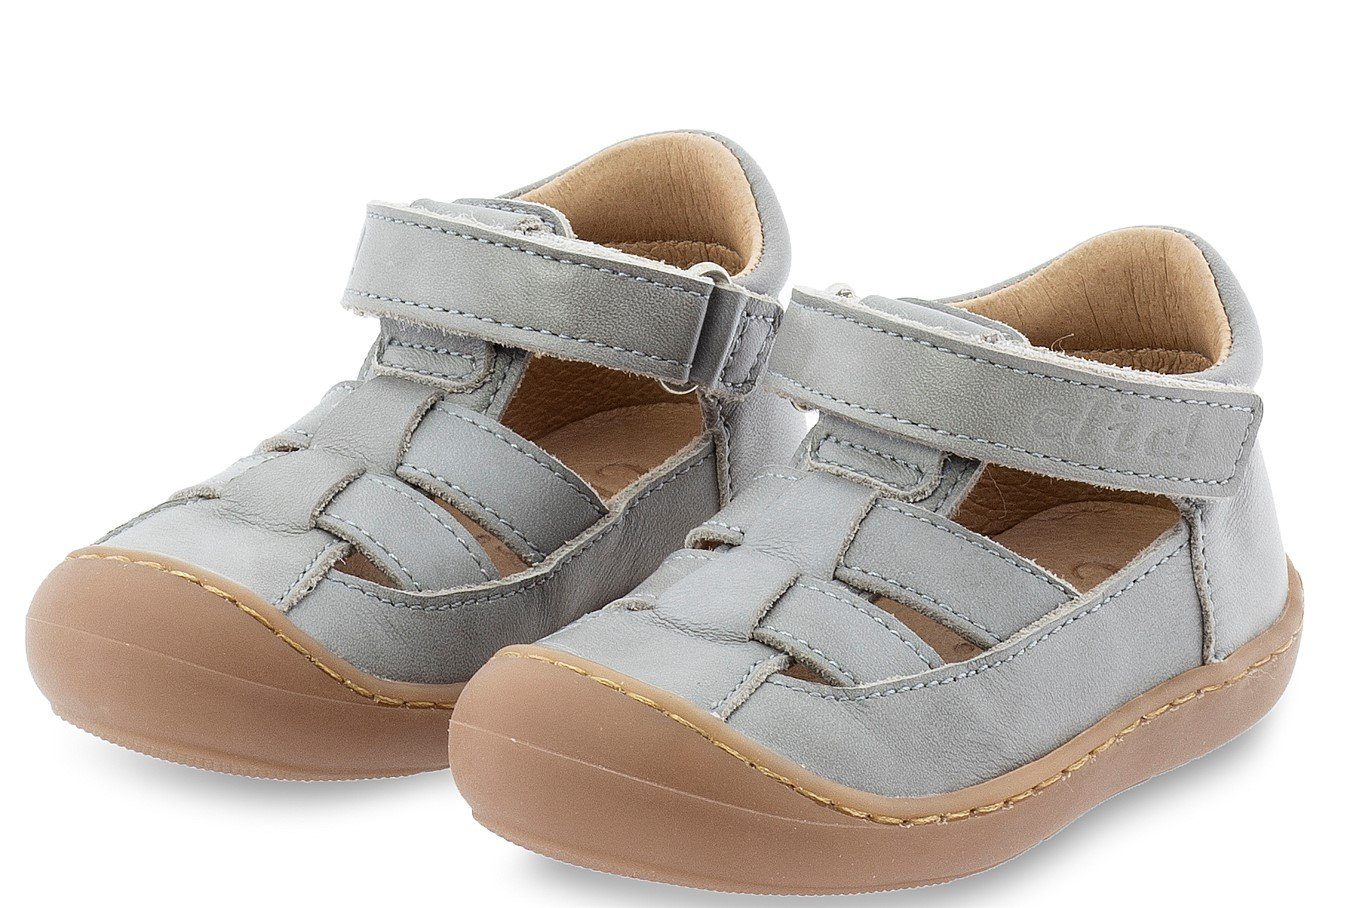 Clic »Clic Sandalen Jungen Lauflernschuhe Leder Grau 20300« Sandalette  online kaufen | OTTO